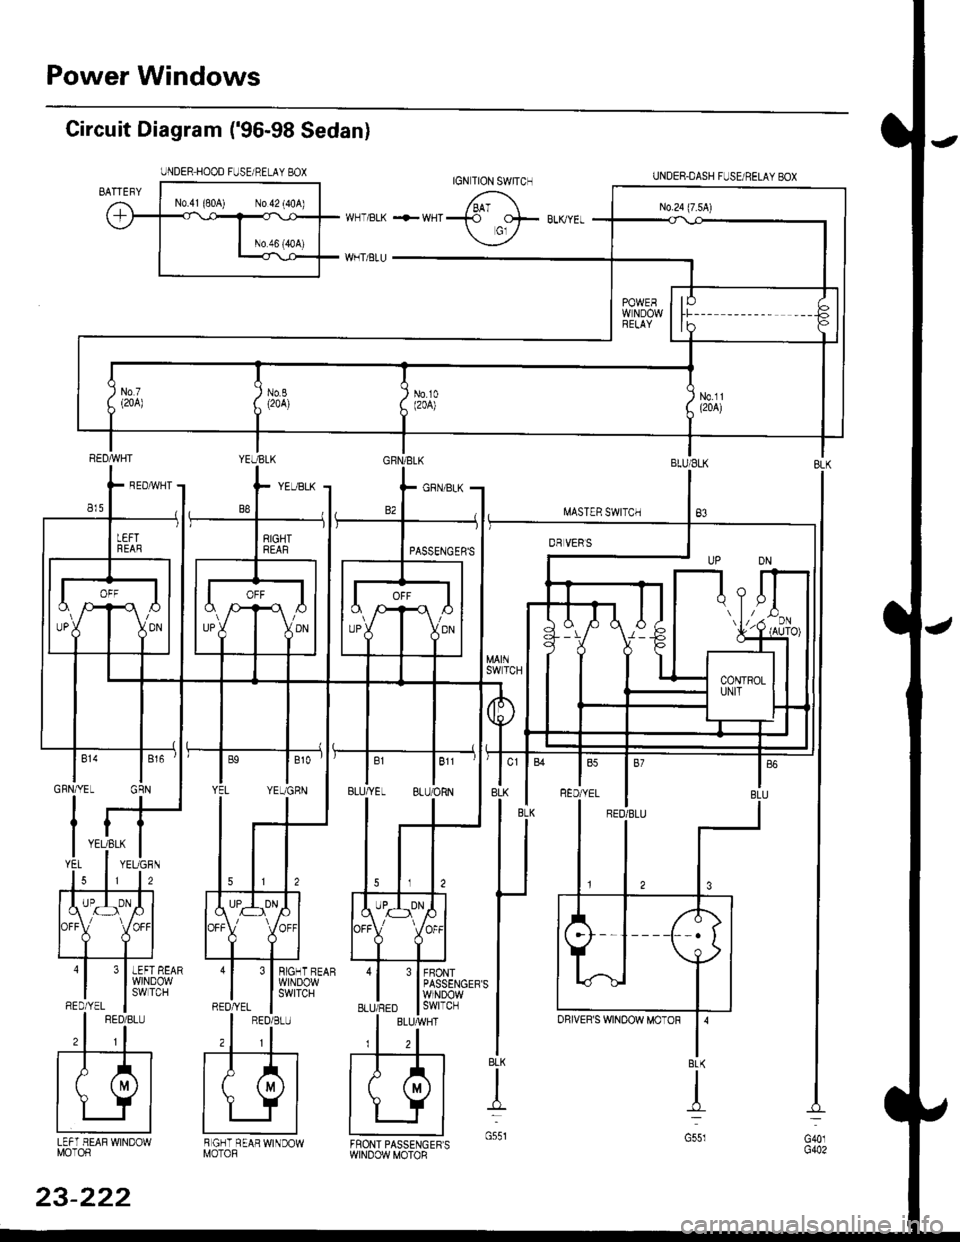 HONDA CIVIC 2000 6.G User Guide Power Windows
Circuit Diagram (96-98 Sedan)
UNDER HOOD FUSE/RELAY BOX
I.iASTER SWITCH
UNDER.DASH FUSUBELAYEOX
BLU/ELK
B3
3 I BIGHT BEAR
l$,]ilP3,y
FBONTPASSENGERSWINDOWswtTcH
BLK
t
G551LEFT HEAF WI